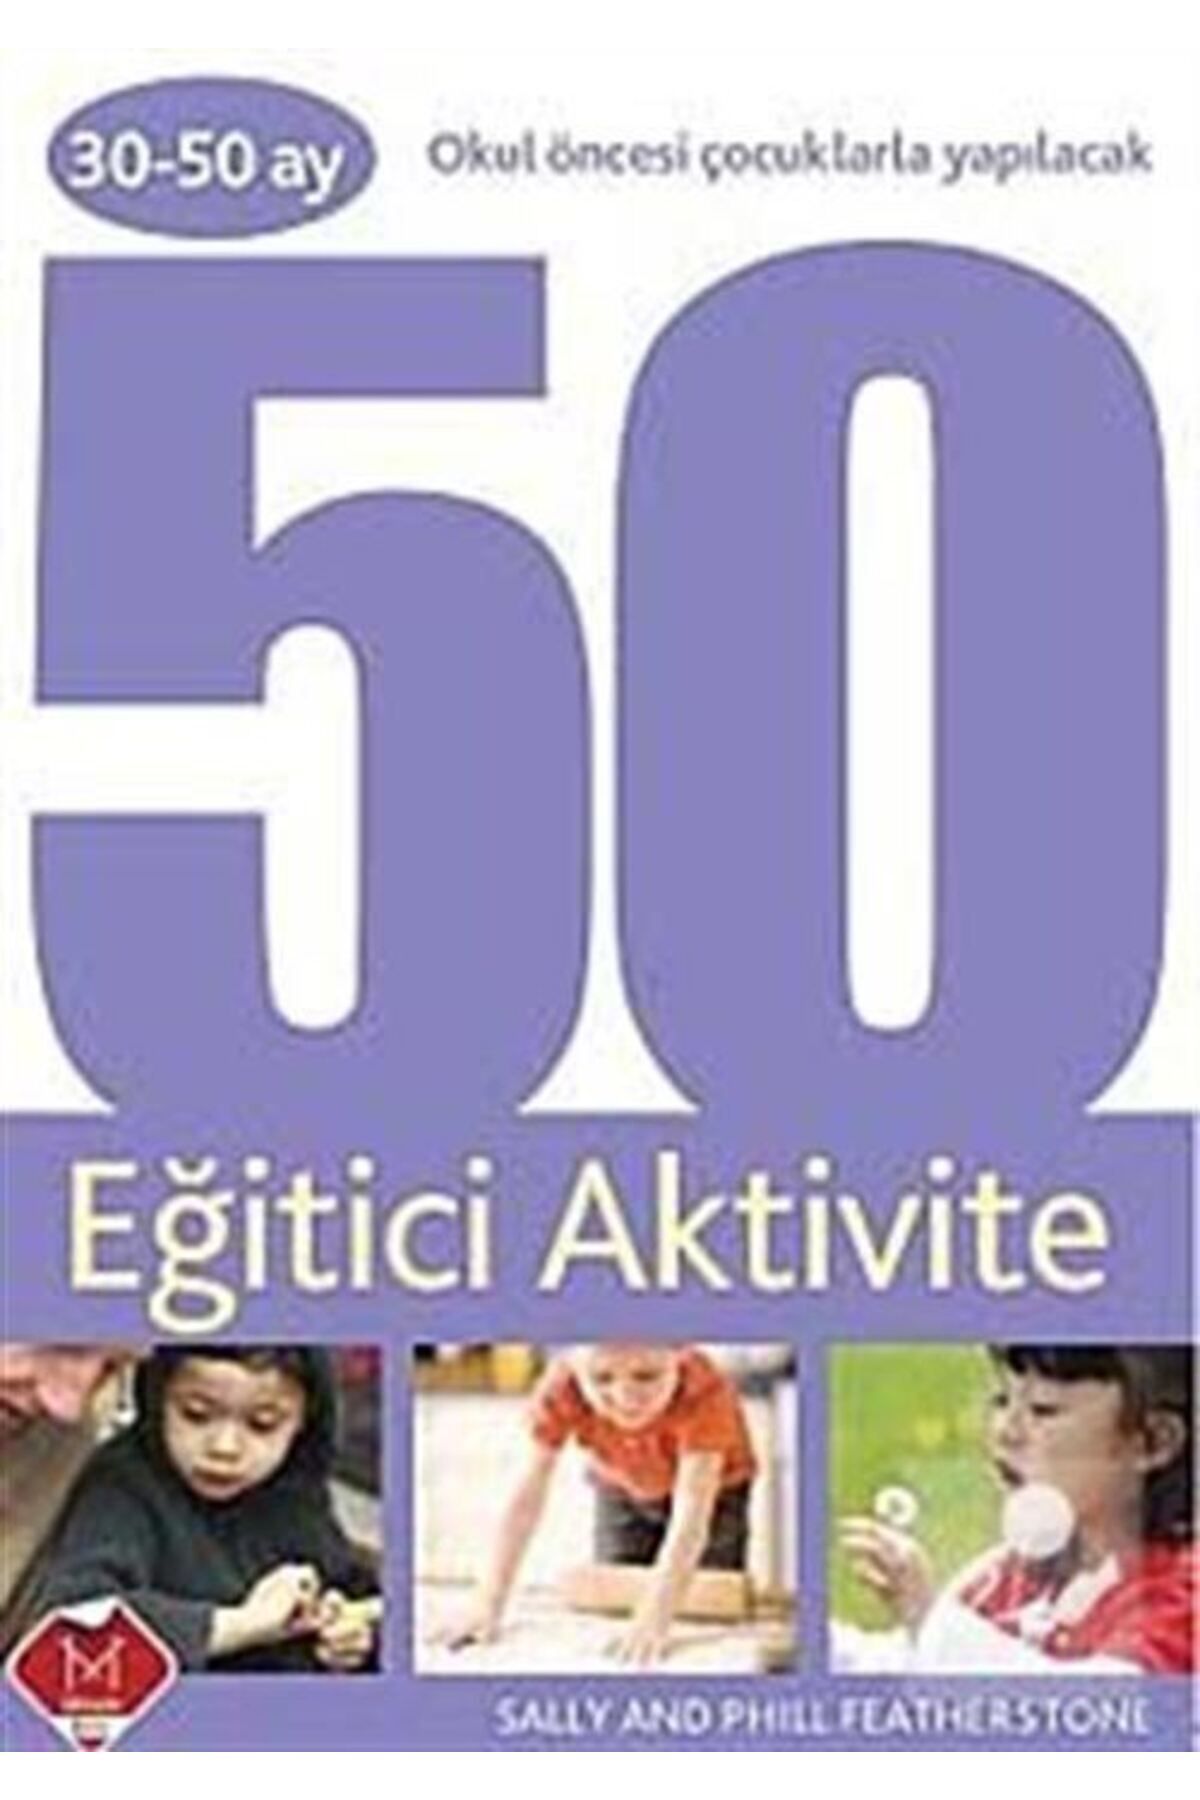 Mikado 30-50 Ay Okul Öncesi Çocuklarla Yapılacak 50 Eğitici Aktivite